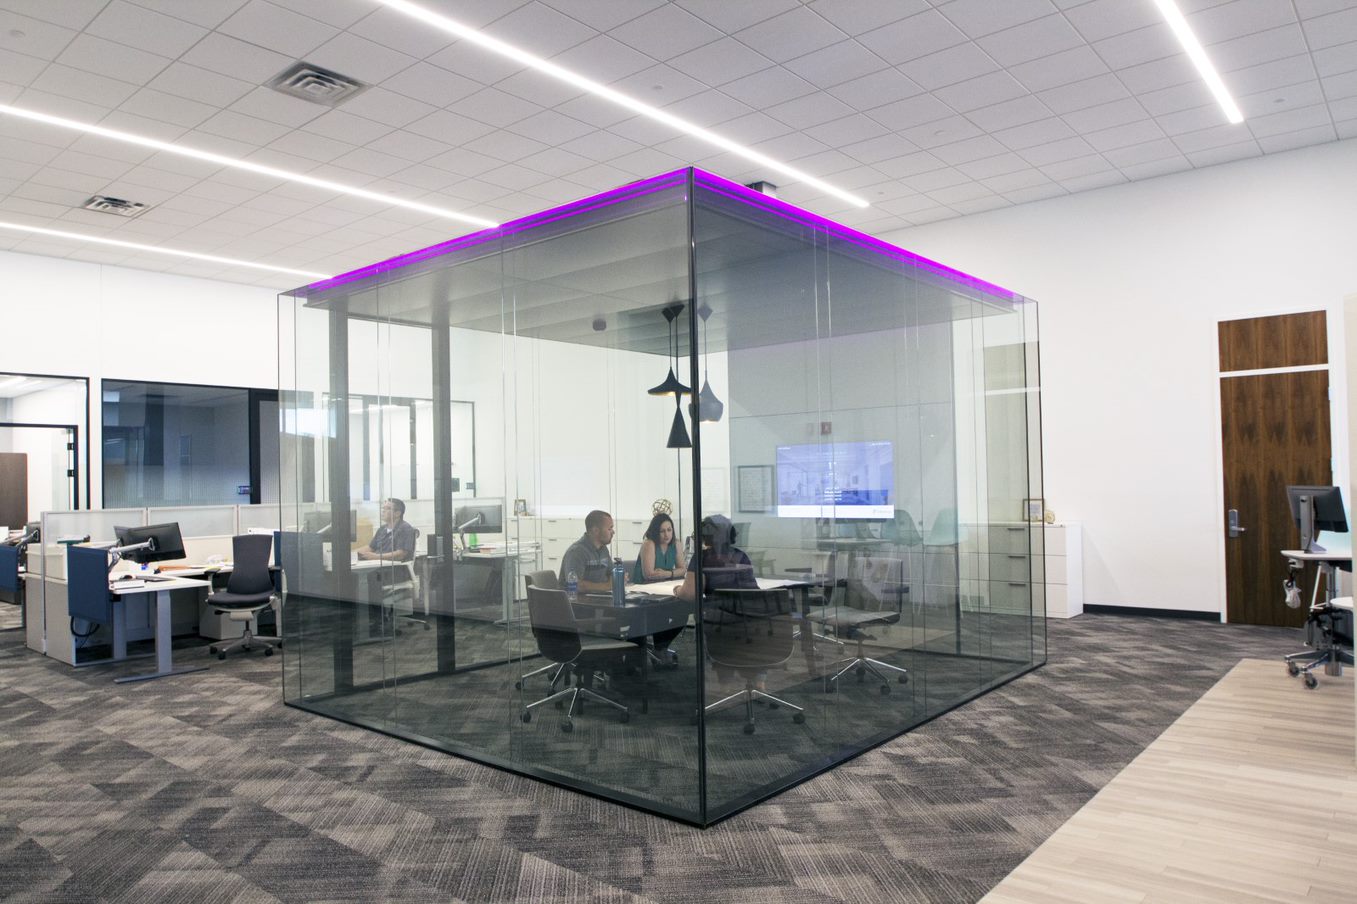 Glazen vergaderruimte binnen een kantoorruimte met 3 vergaderende mensen